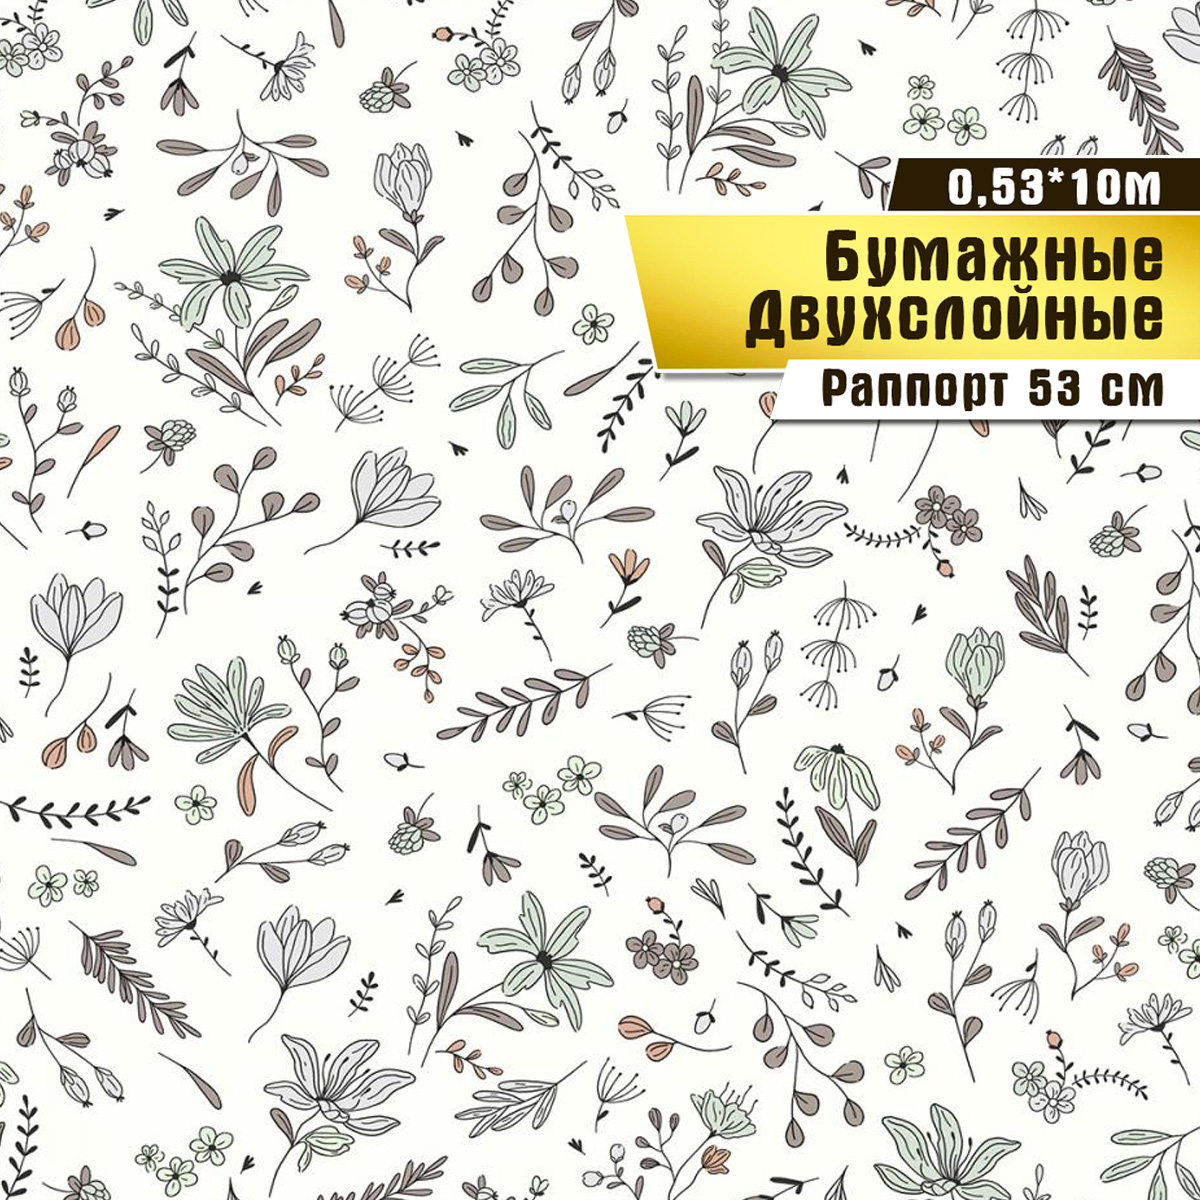 Обои бумажные двухслойные, Саратовская обойная фабрика, «Июль» арт.892-06, 10*0,53м